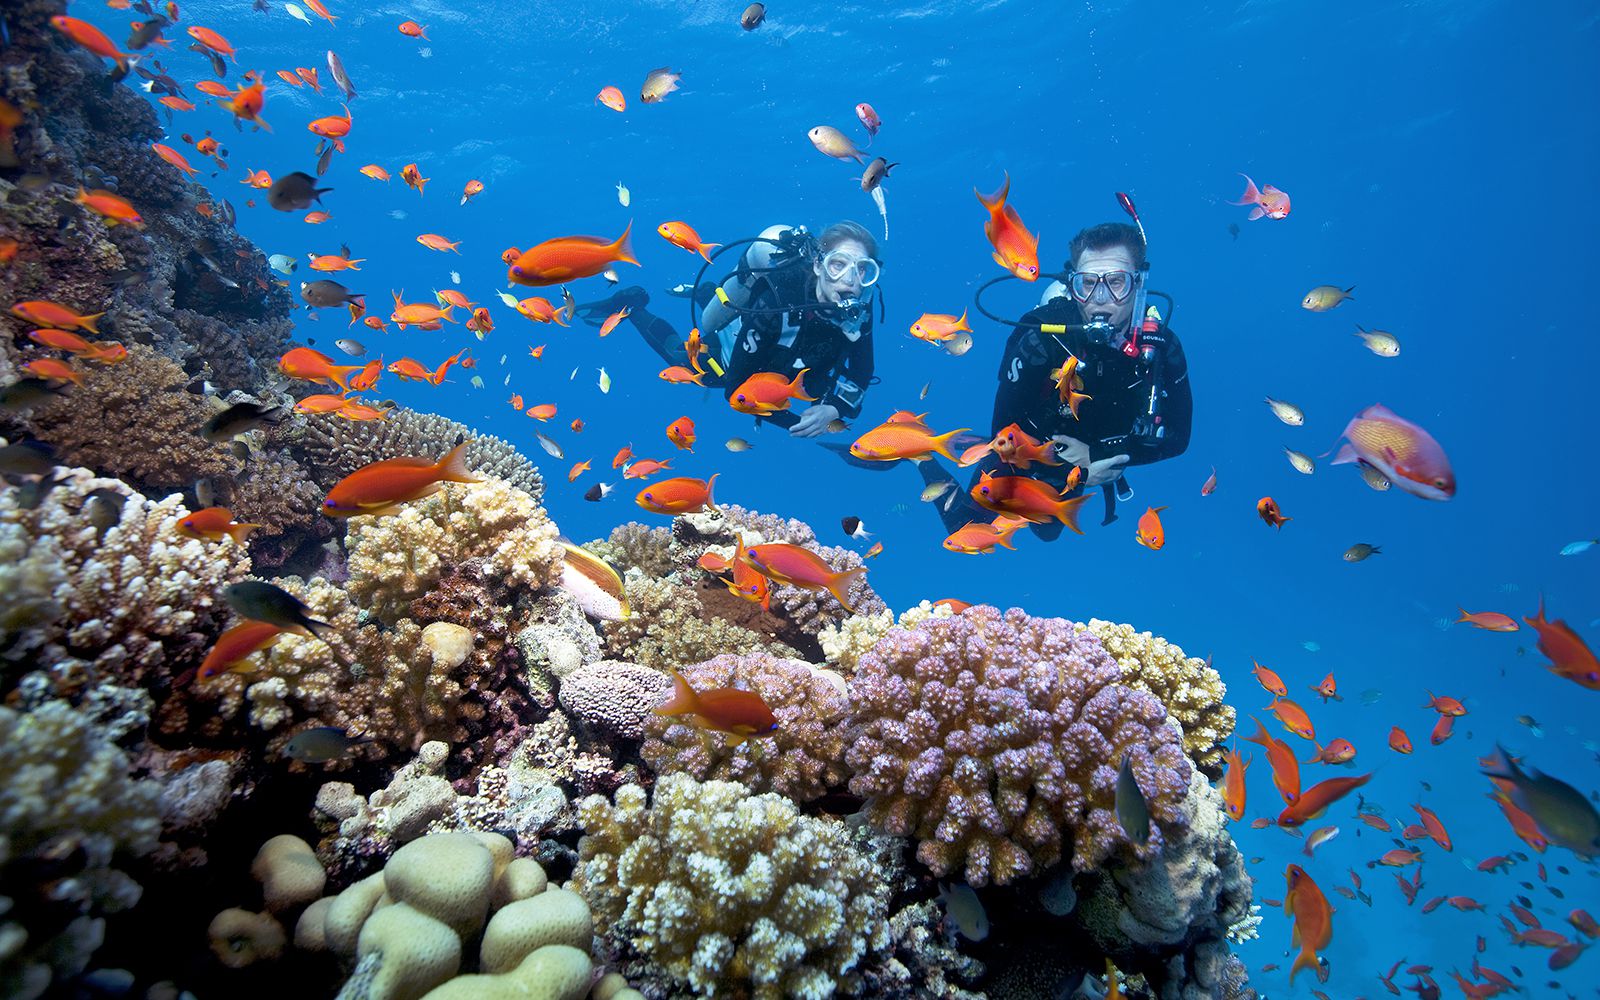 Kinh nghiệm lặn biển ngắm san hô ở đảo Phú Quốc - ChuduInfo